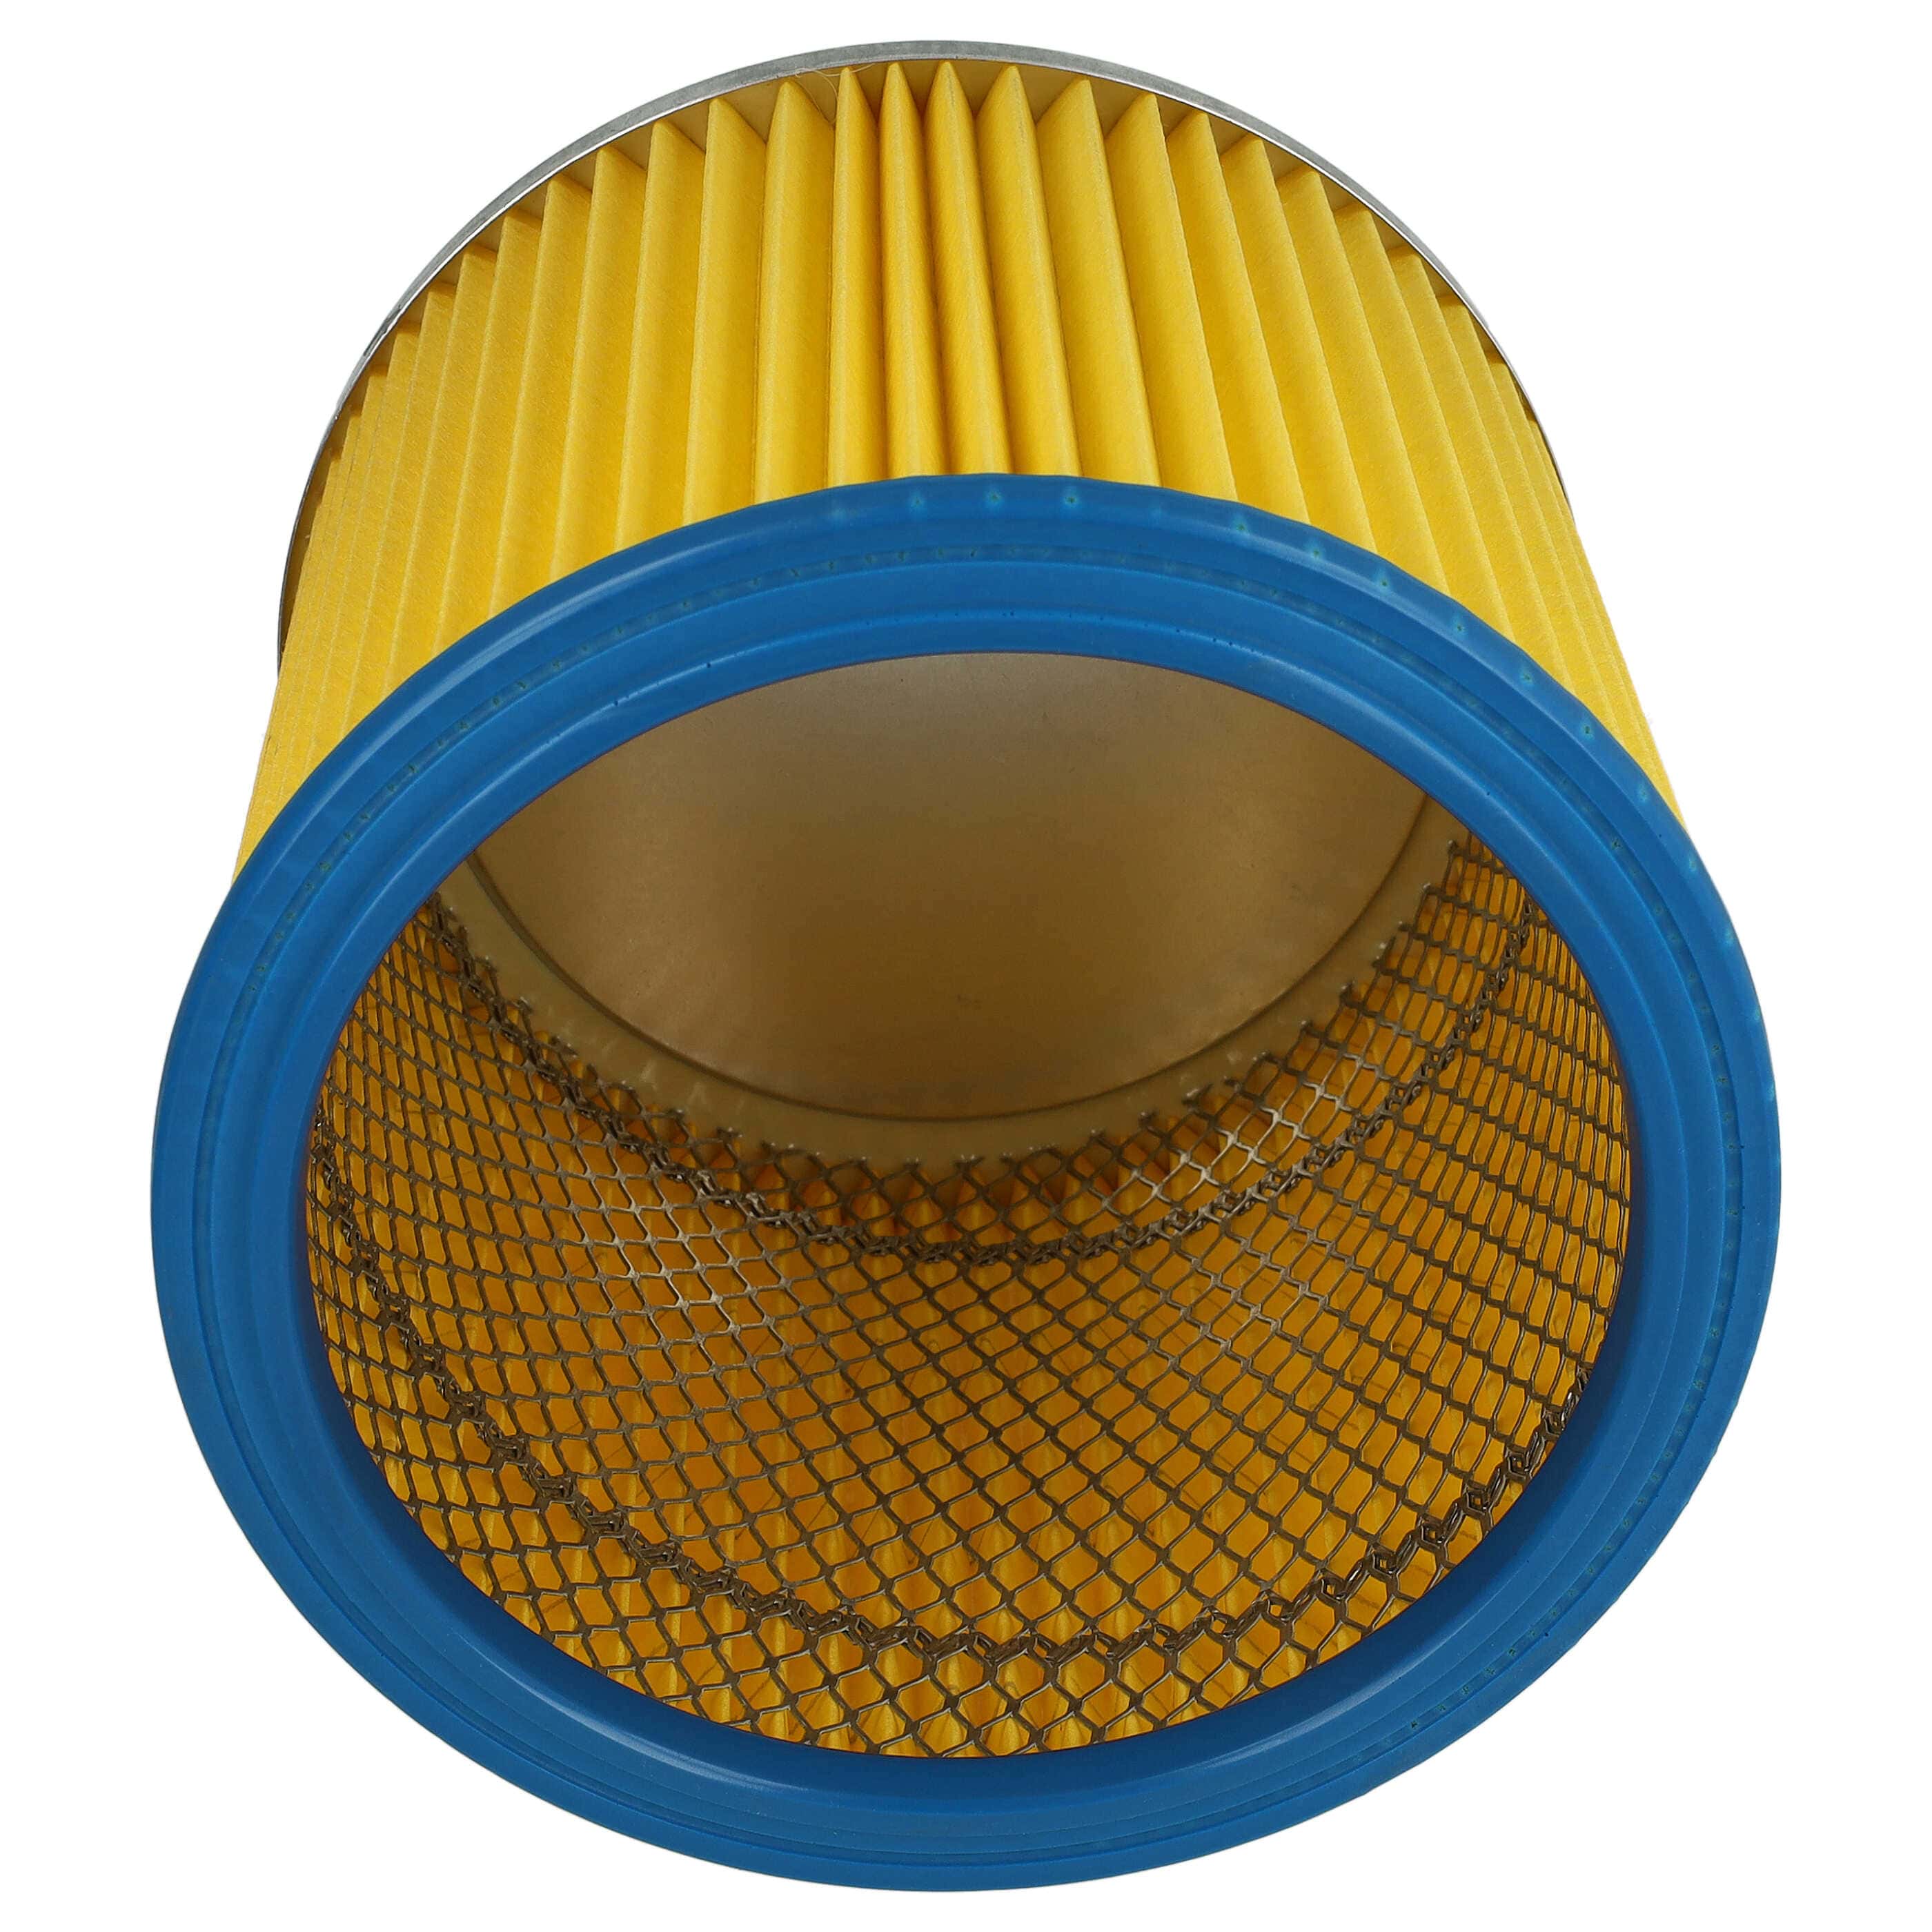 Filtro sostituisce Einhell 2351110 per aspirapolvere - filtro cartucce, blu / giallo